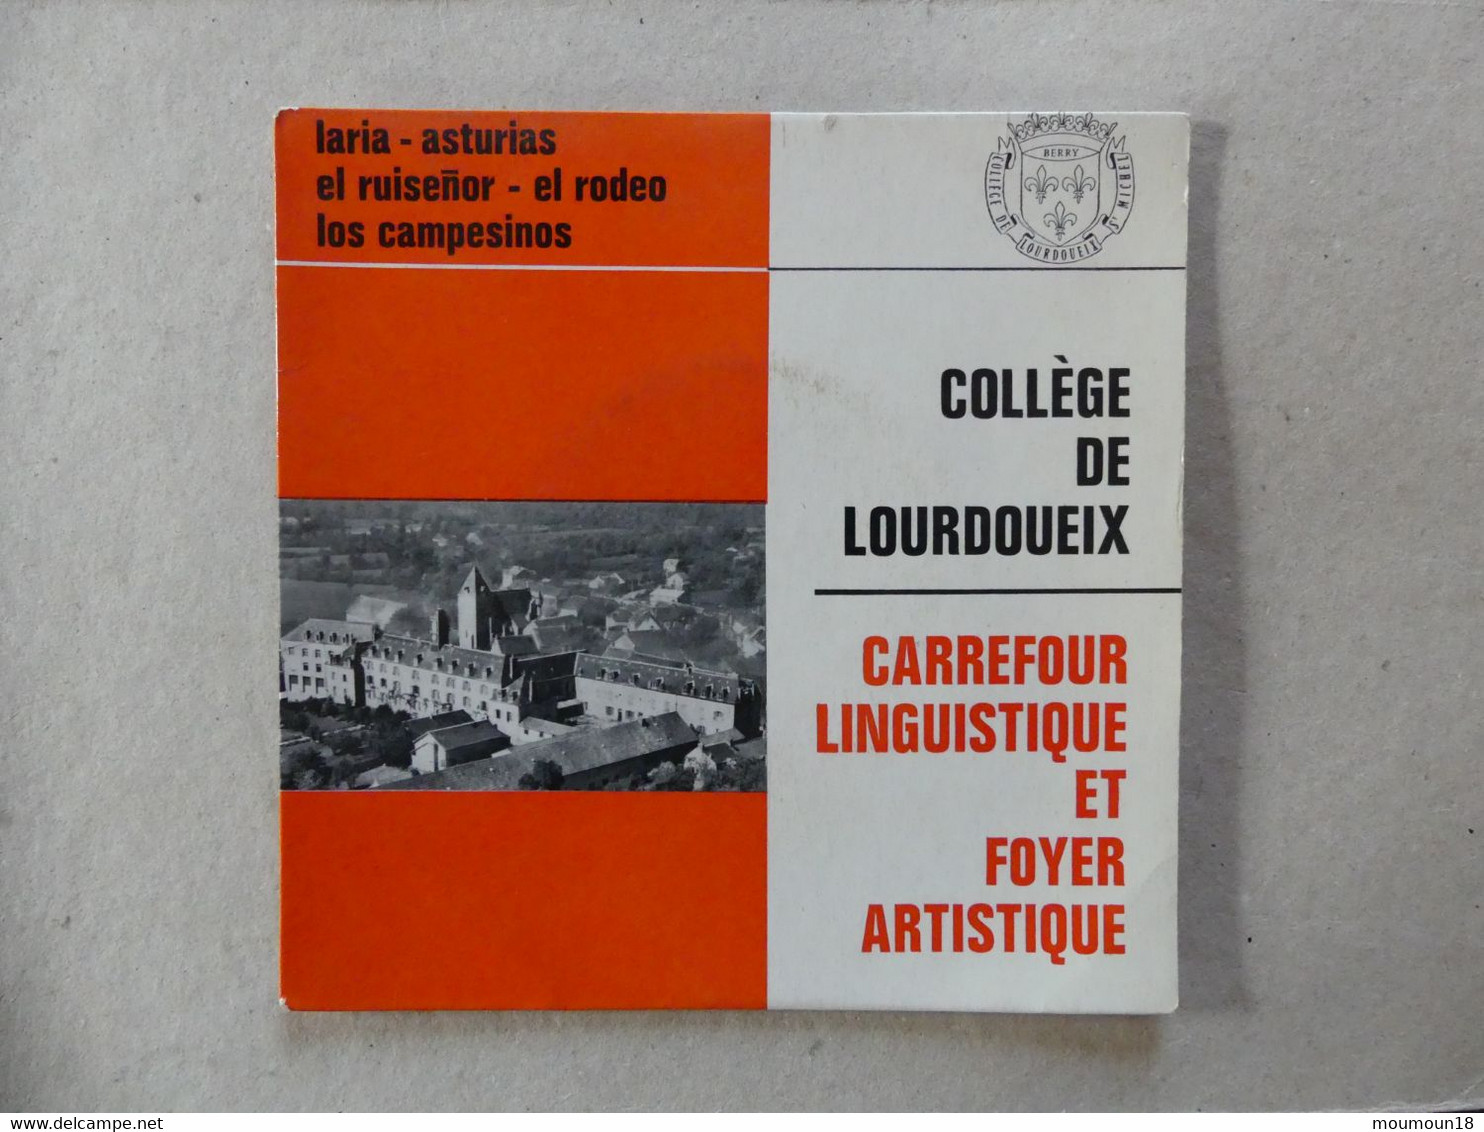 45 T College De Lourdoueix Carrefour Linguistique Et Foyer Artistique Matilla Ramos - Sonstige - Spanische Musik